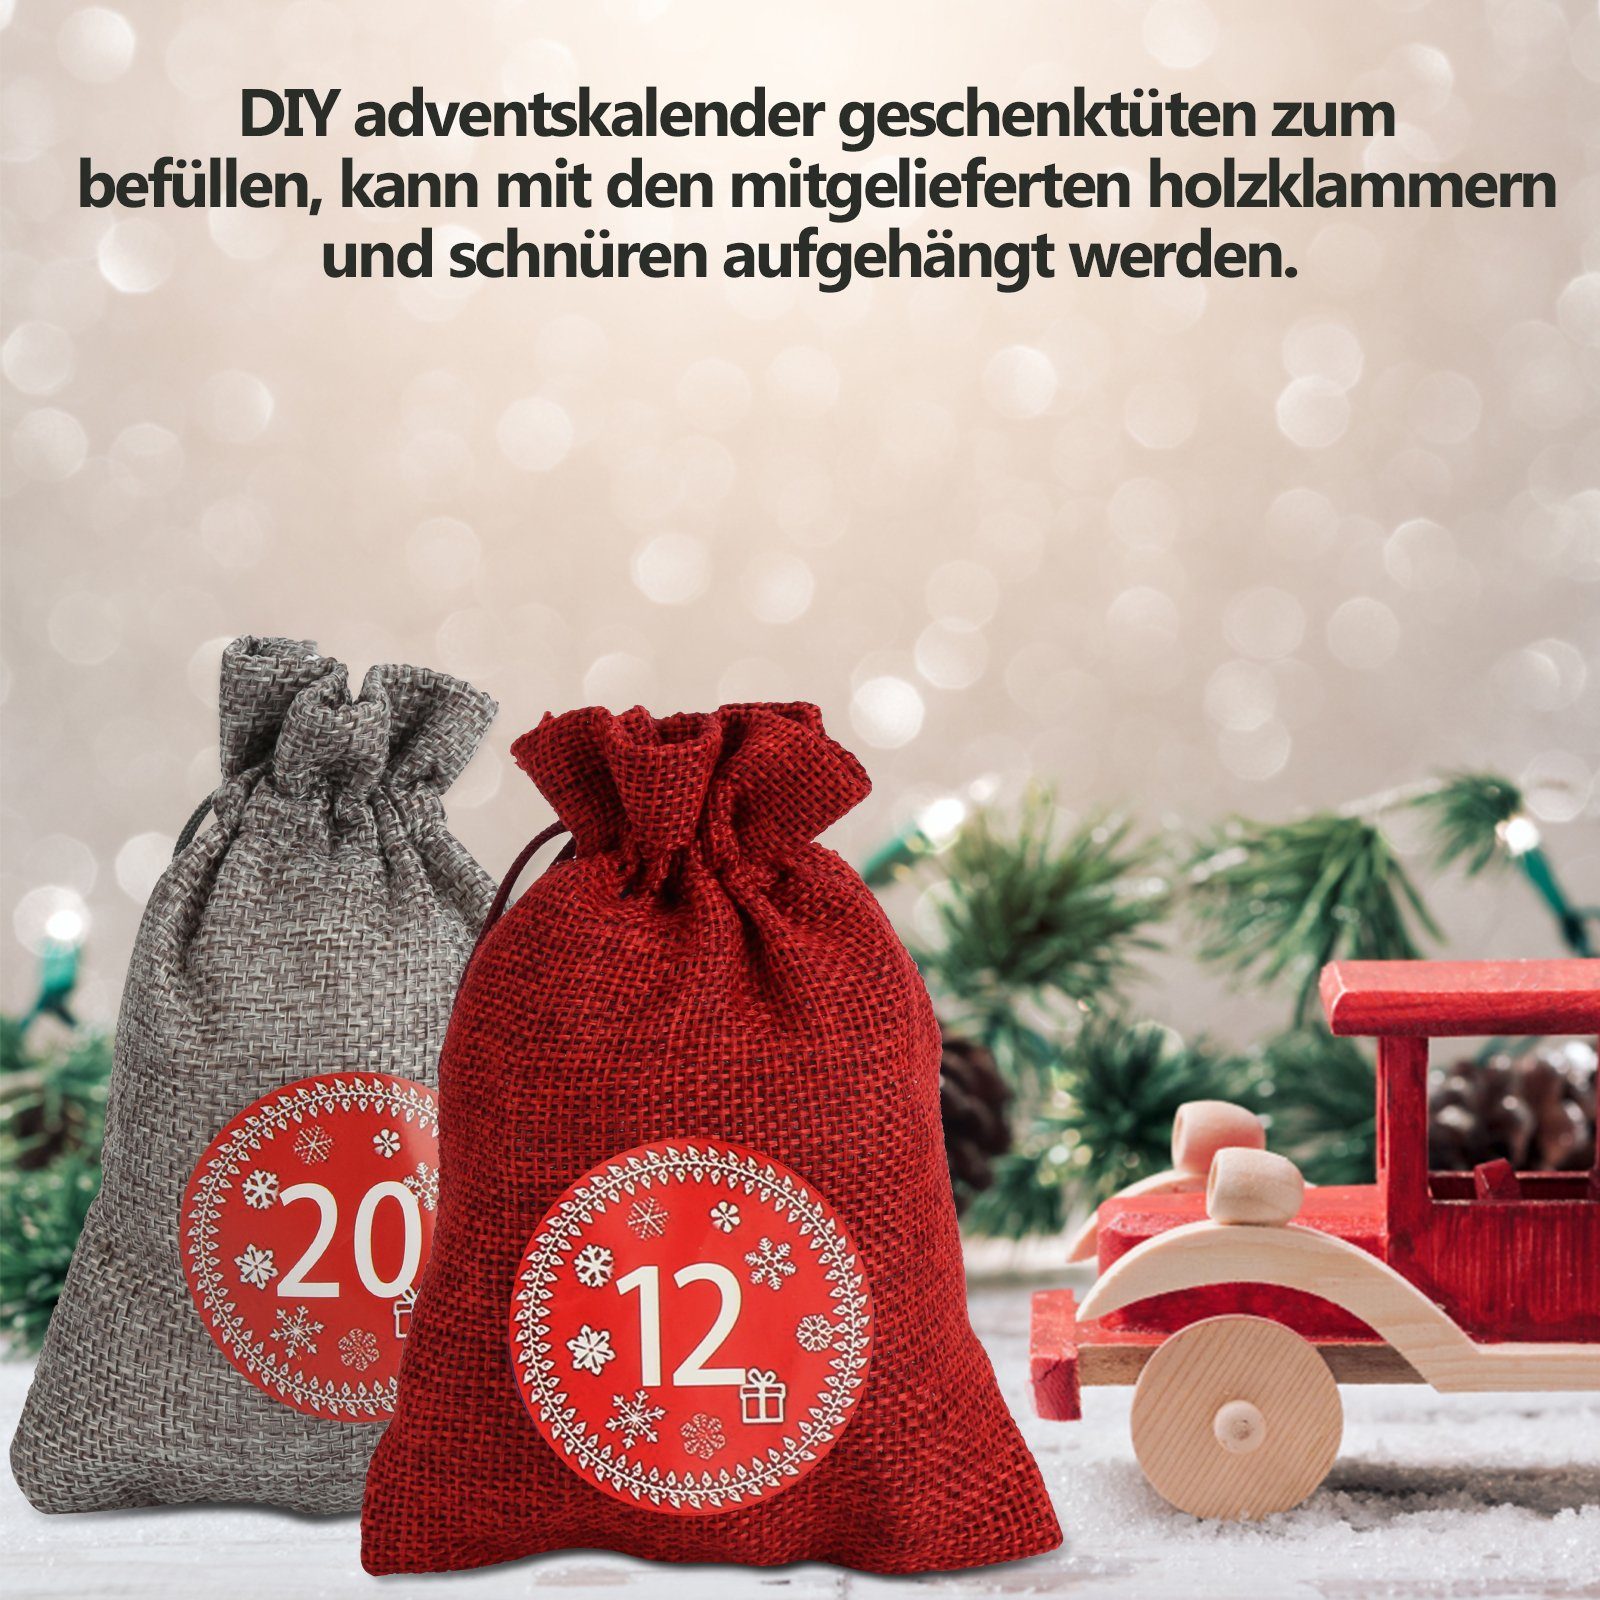 zum Dekohänger Adventskalender Lospitch 24Stk Rot/Grau Weihnachten Weihnachtskalender Befüllen